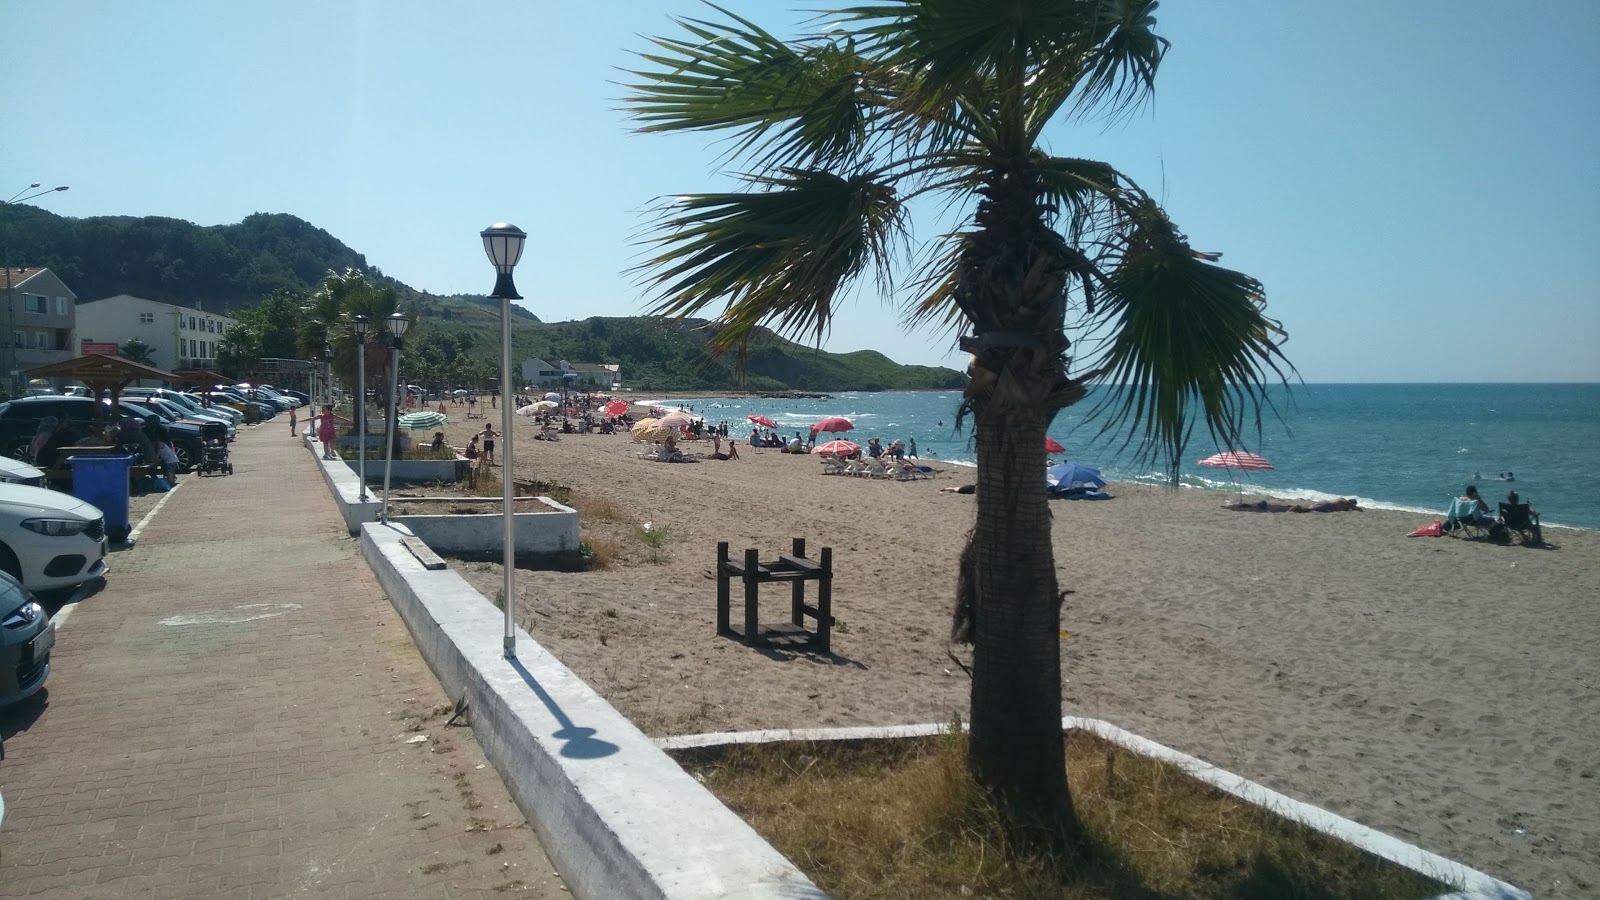 Guzelkent Halk Plaji'in fotoğrafı geniş plaj ile birlikte